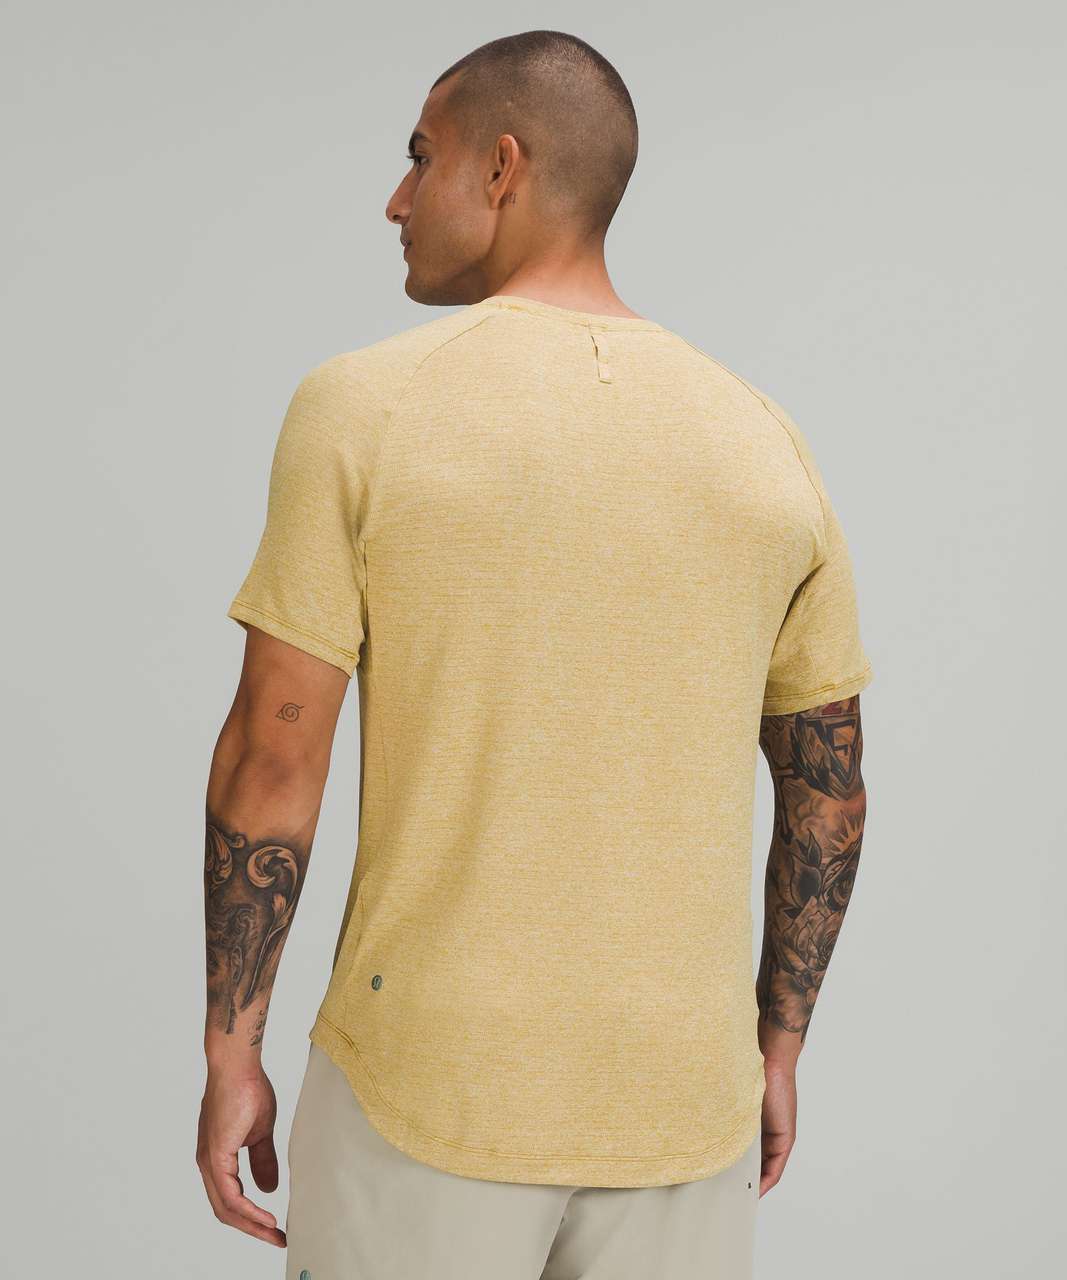 Lululemon Drysense Training Short Sleeve Shirt - Heathered Auric Gold